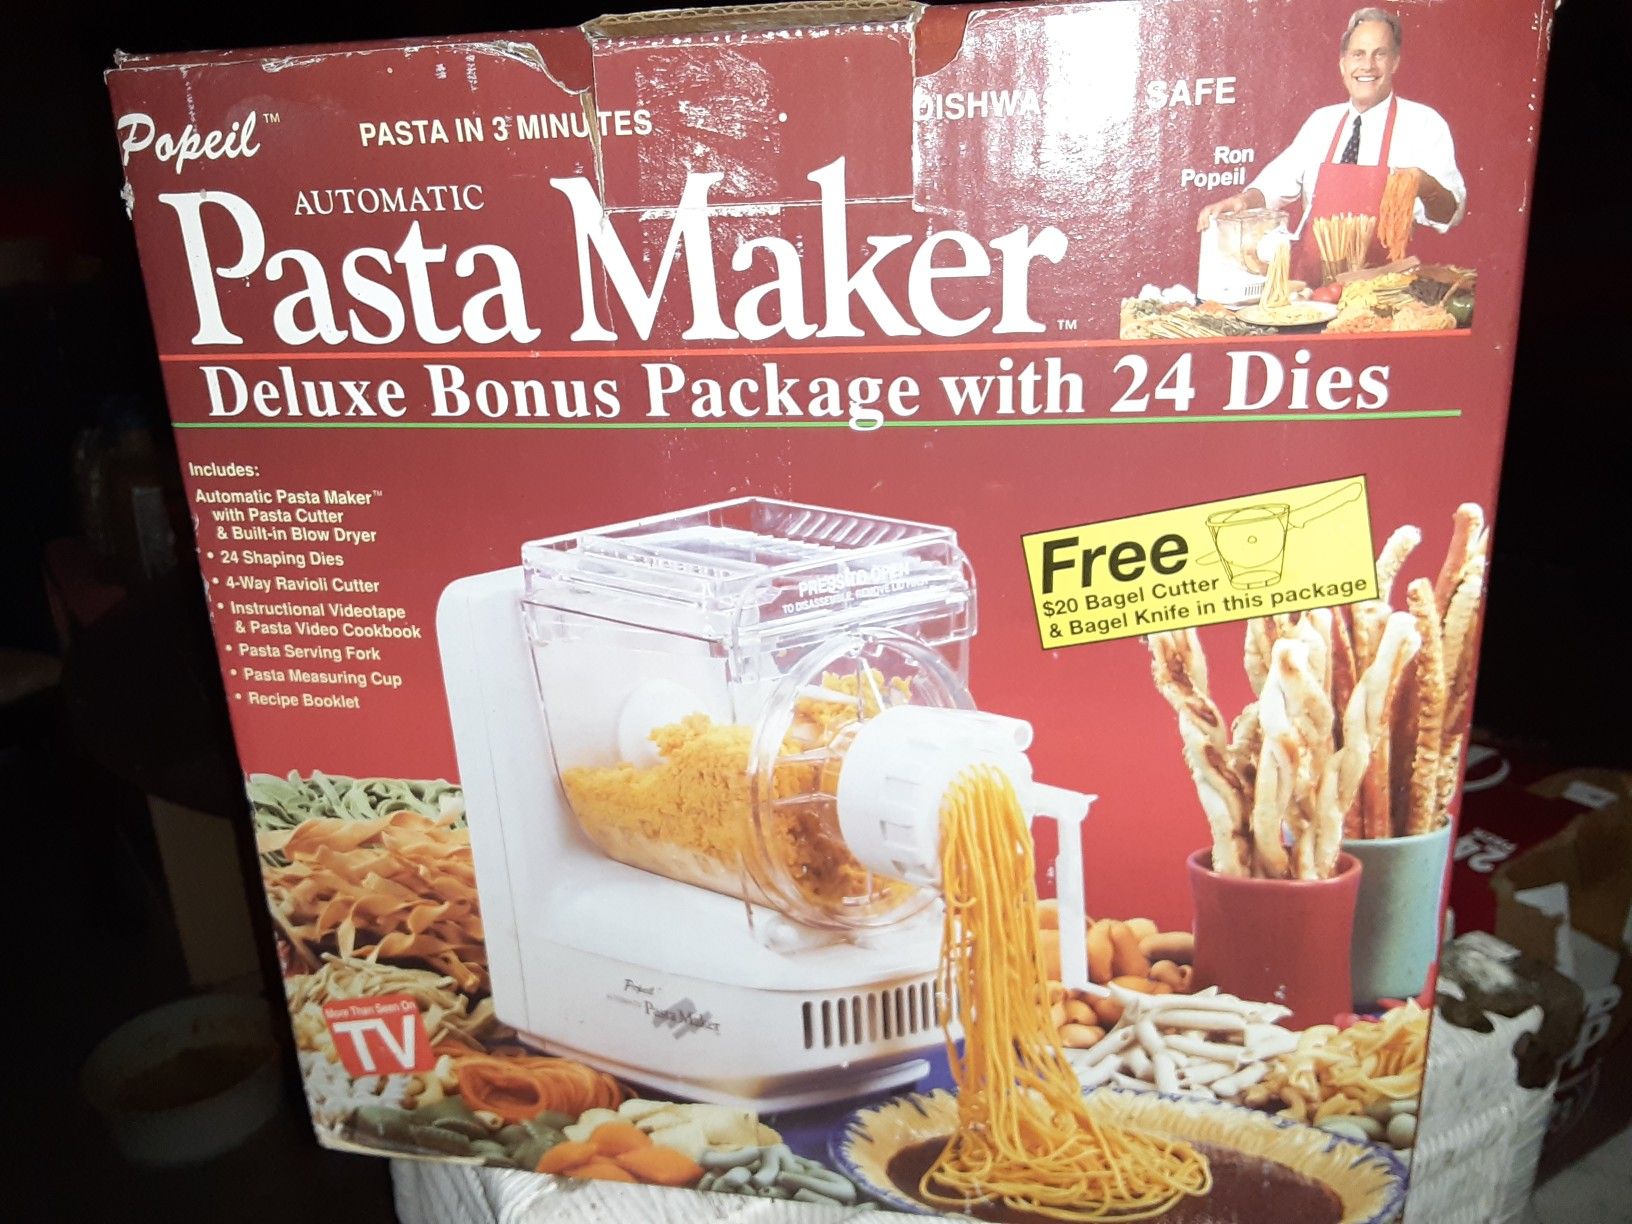 Brand new Popeil Pasta maker